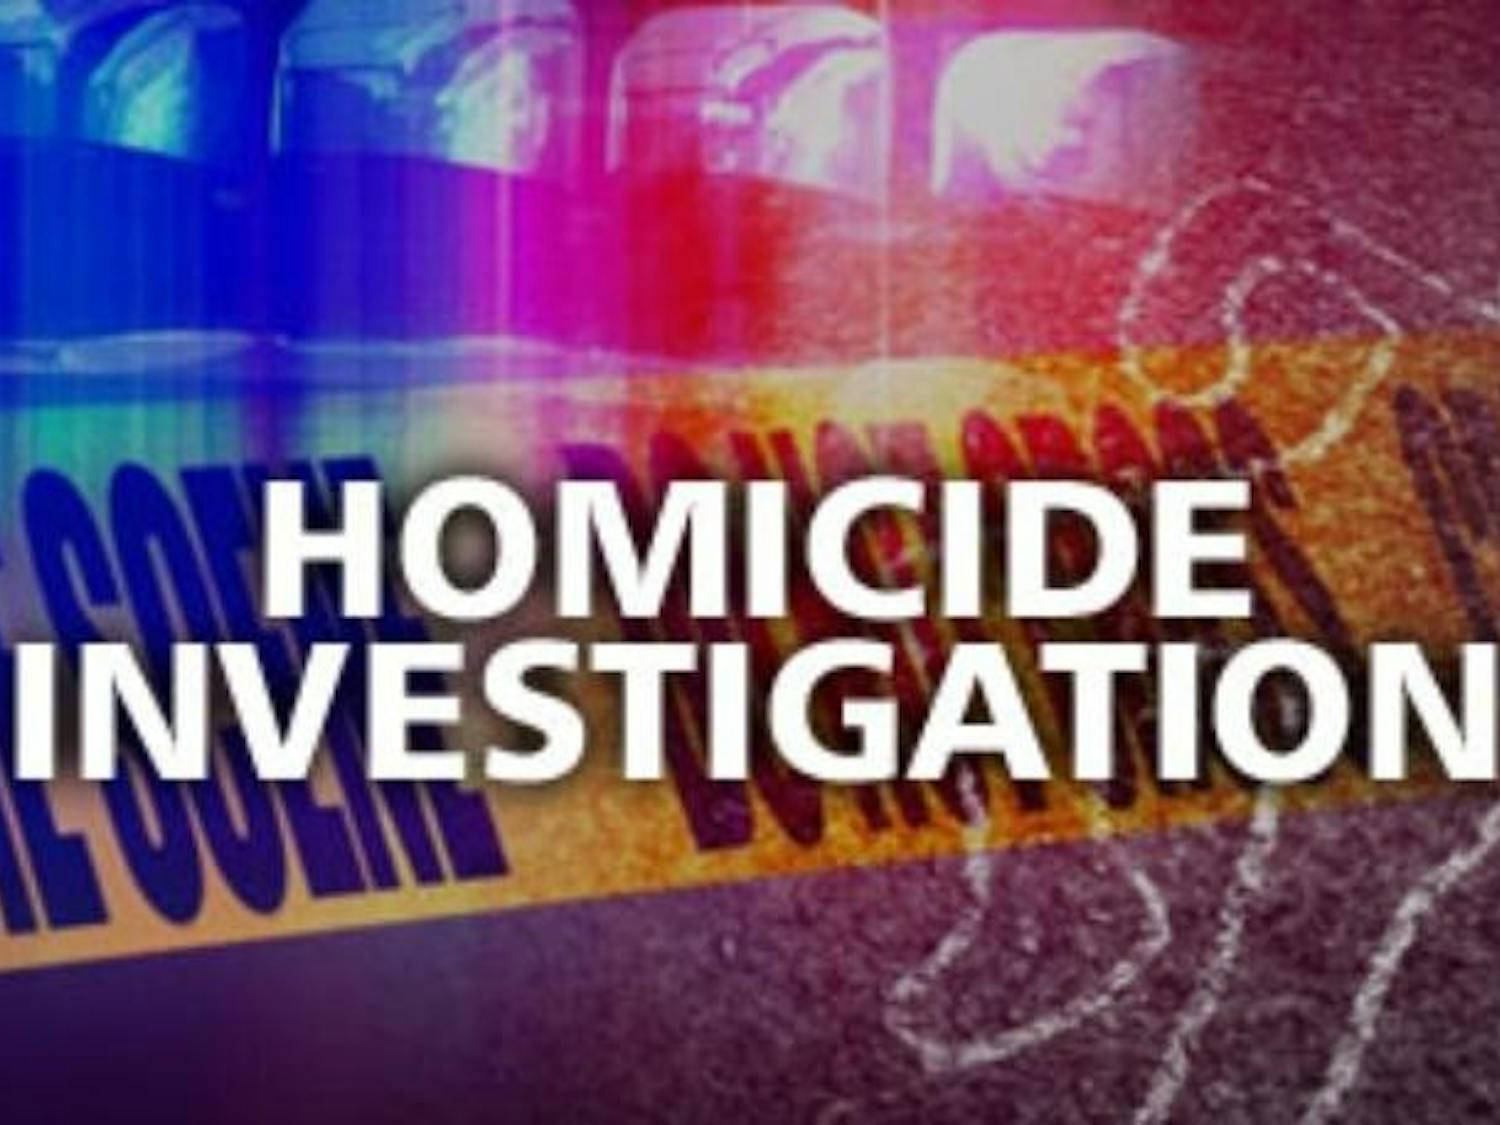 Homicide investigation